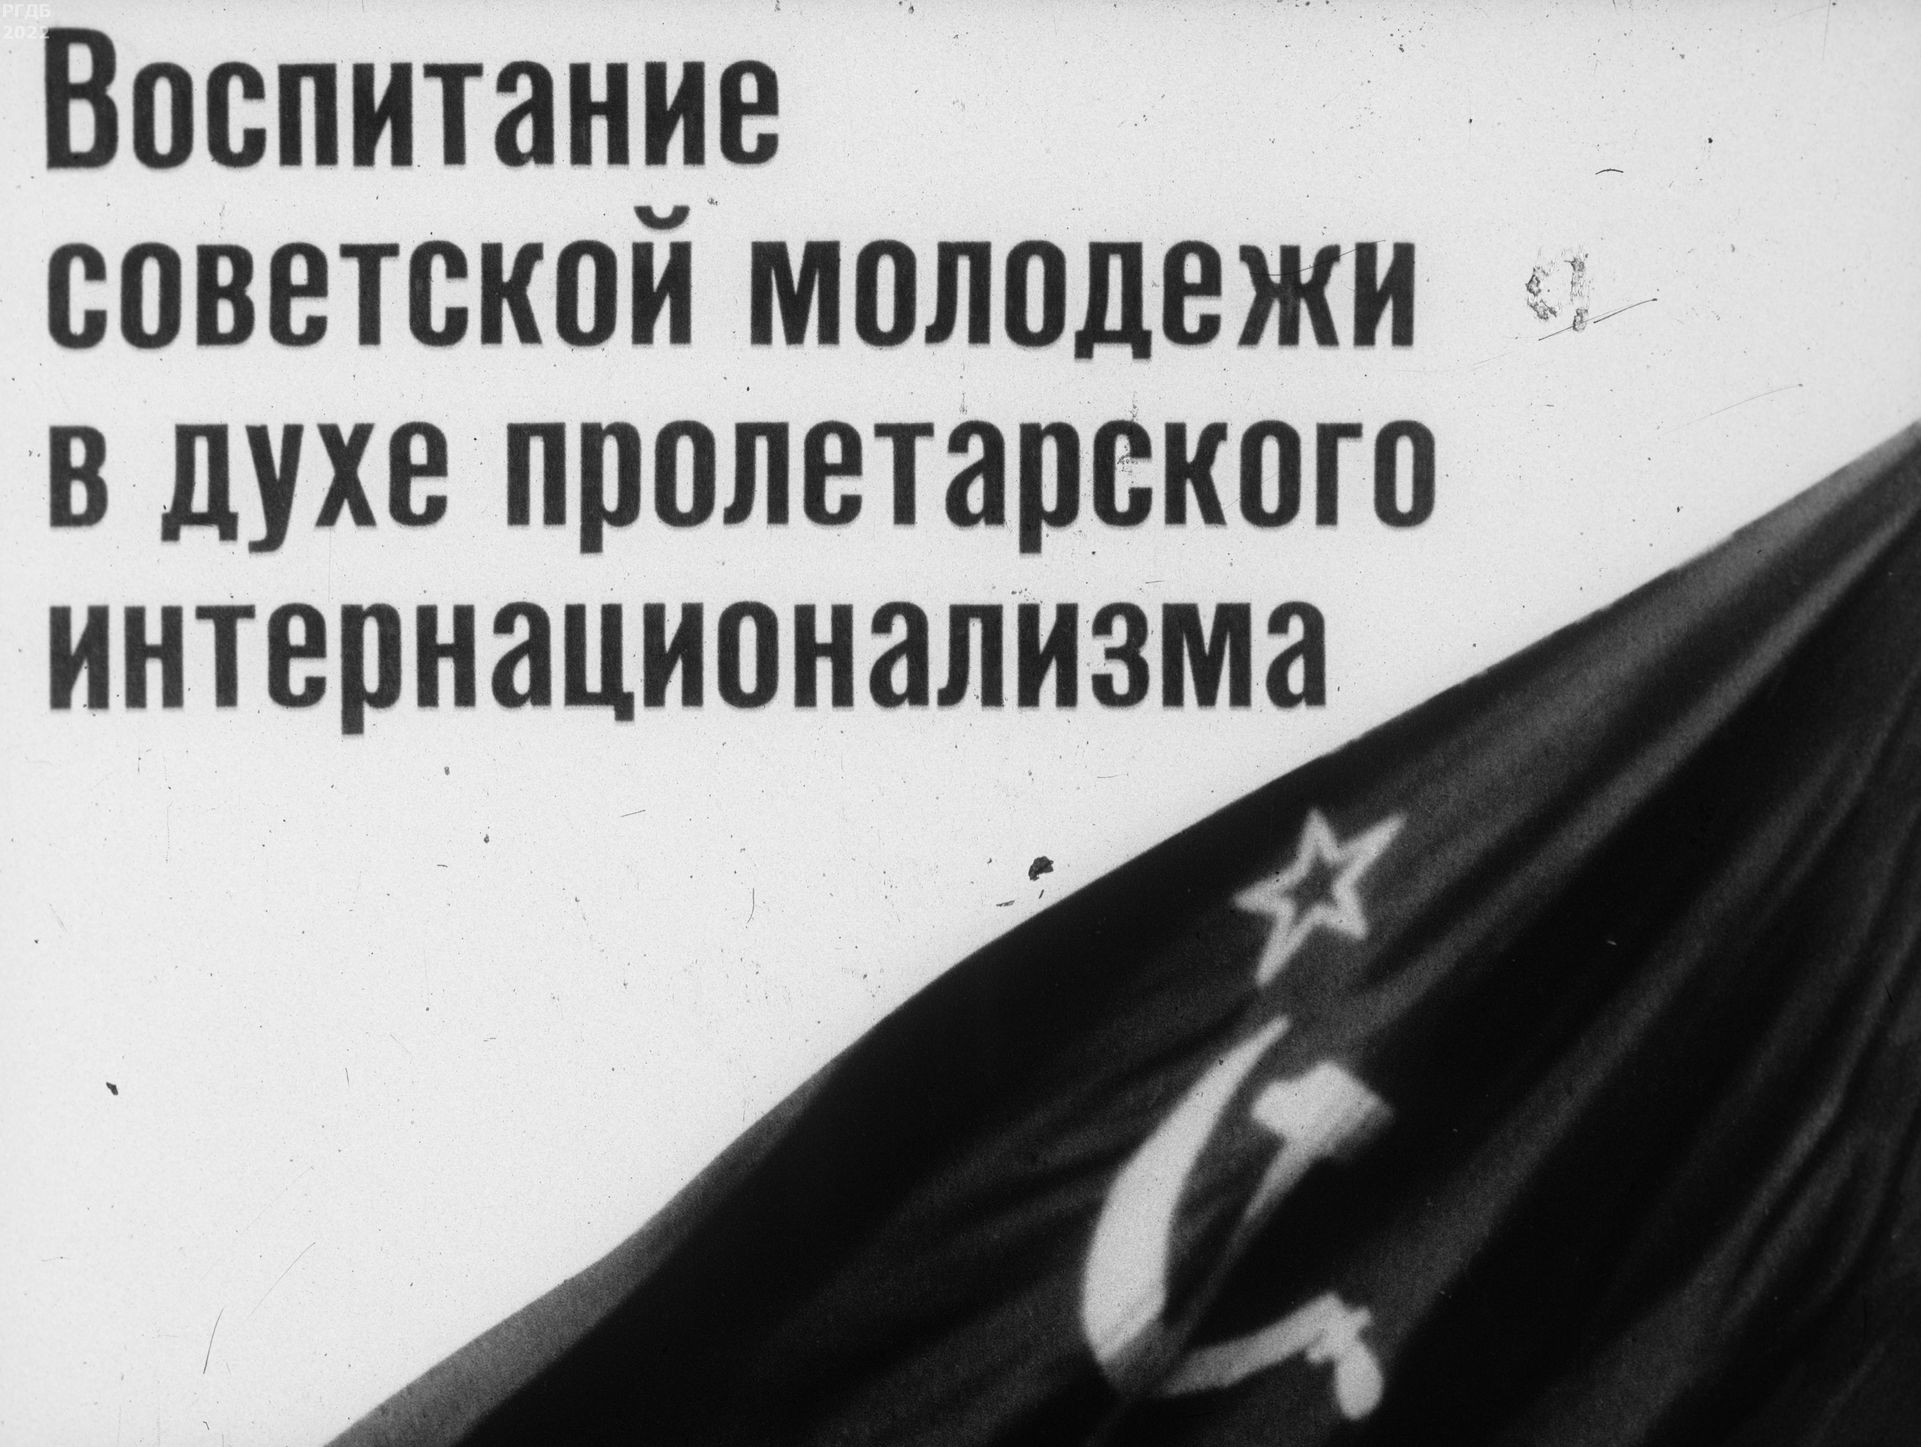 Воспитание советской молодежи в духе пролетарского интернационализма